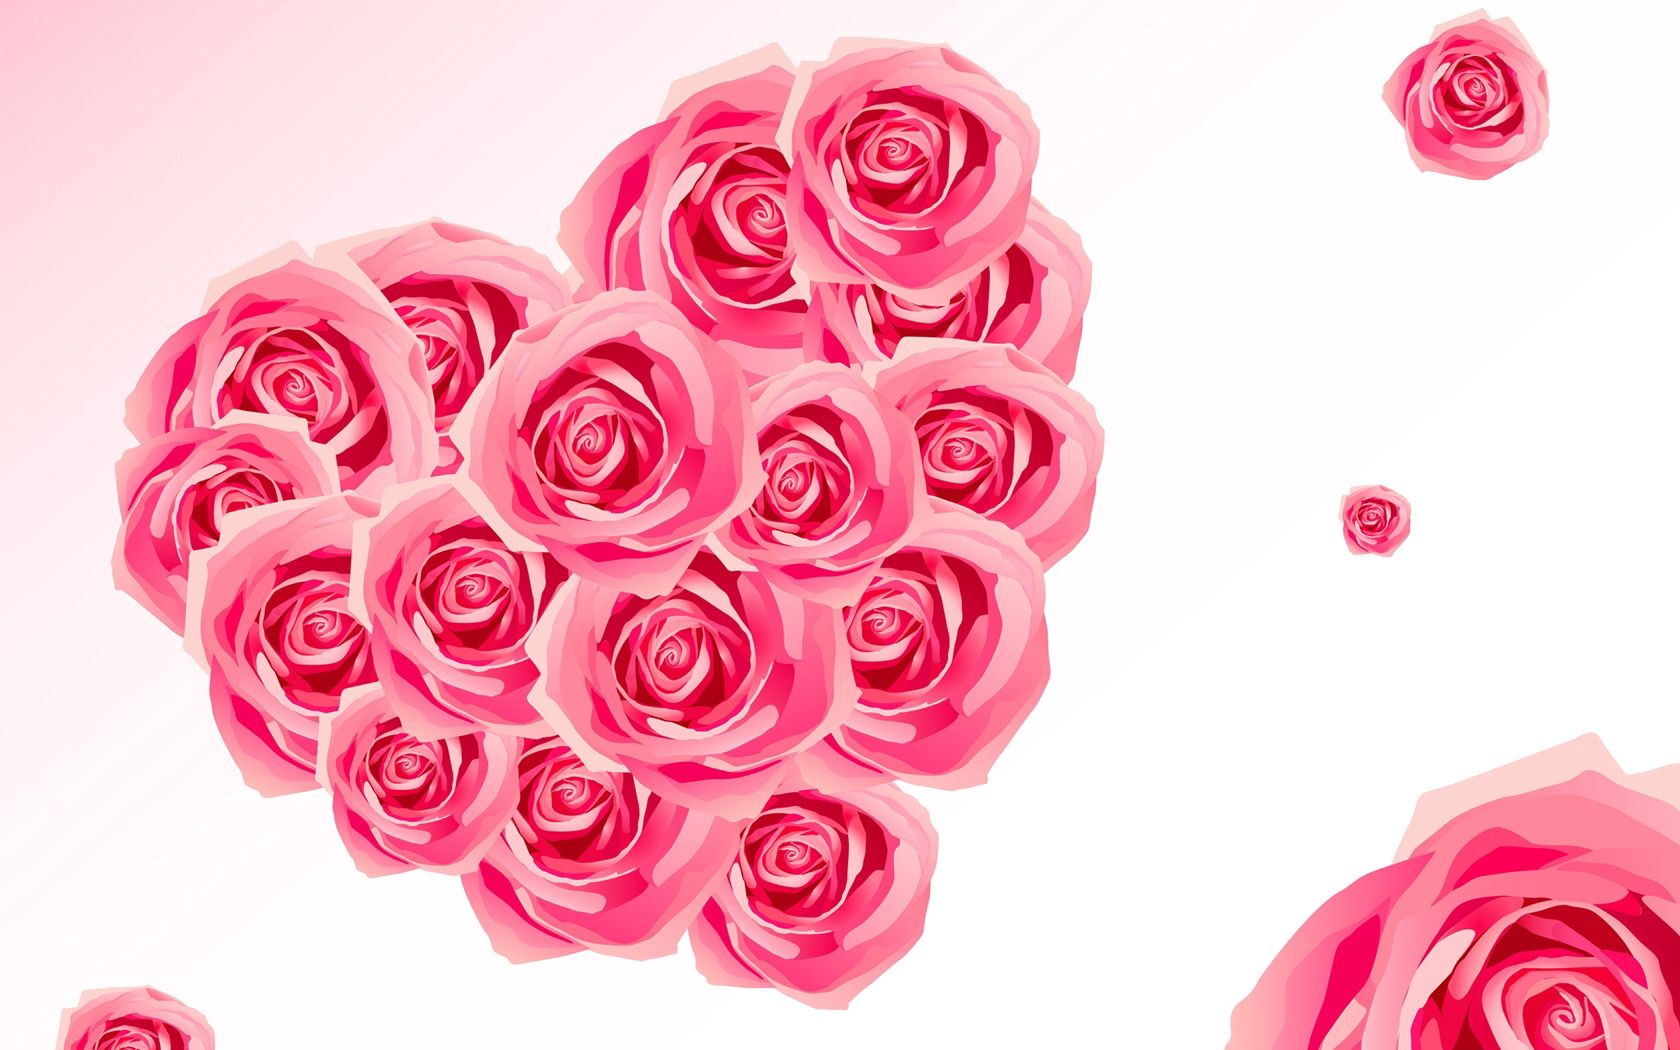 Скачать обои бесплатно Цветы, Сердце, Розовый, Вектор, Розы картинка на рабочий стол ПК